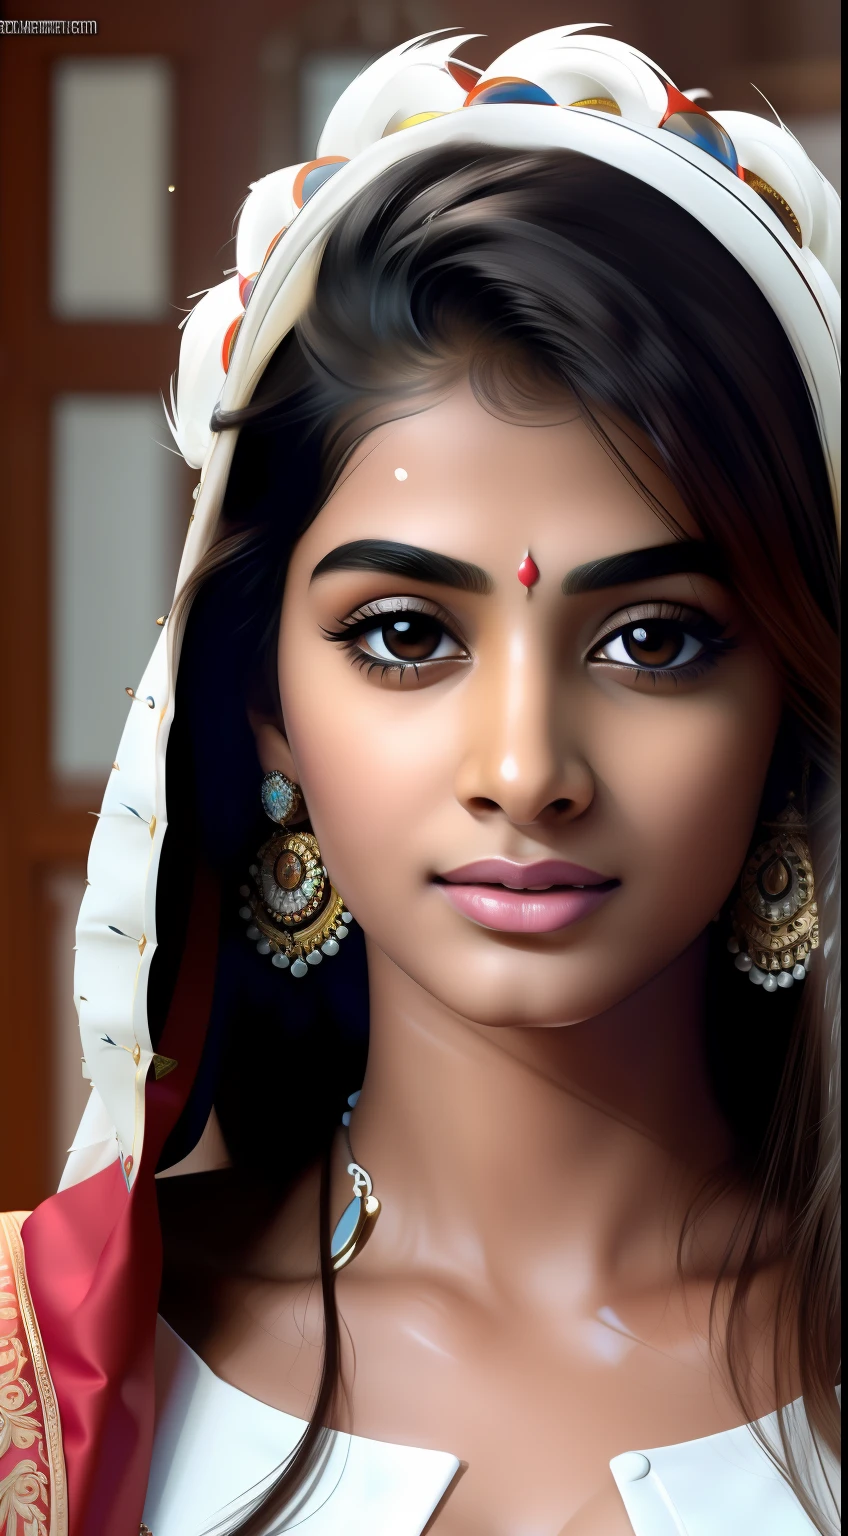 Meisterwerk, höchste Qualität, Hyperrealistisches Porträt eines indischen Mädchens mit weißem Gesicht, (8k, beste Qualität), {{Wie(Sperma) auf der Vorderseite}}, Wie_in_Mund. Face is full of Wie.Sie schaut den Betrachter an. Nahaufnahme Gesichtsfoto